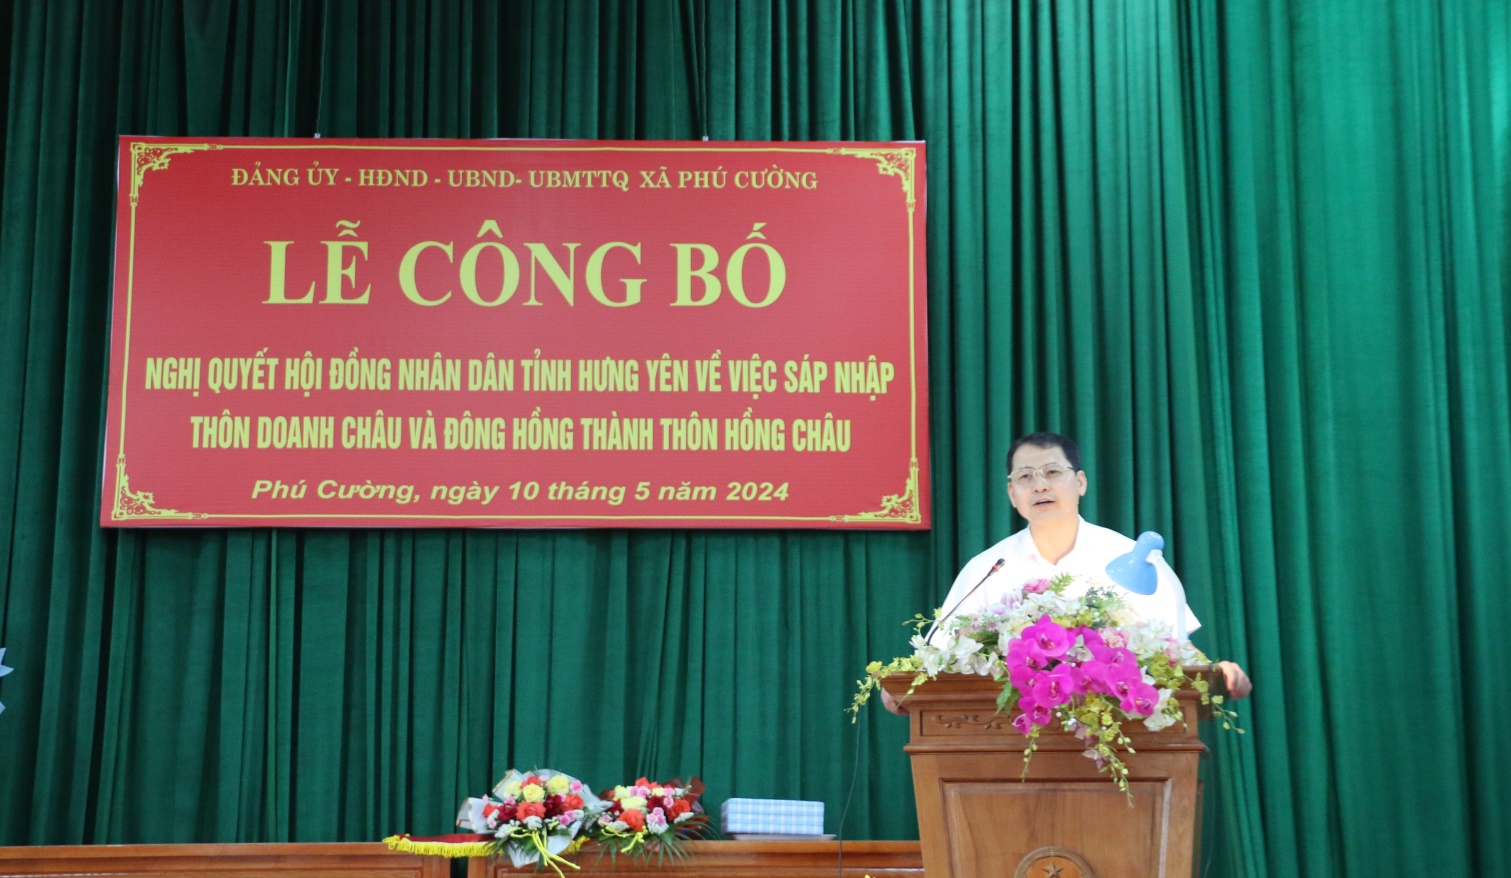 Lễ công bố Nghị quyết của Hội đồng Nhân dân tỉnh  về việc sáp nhập thôn tại xã Phú Cường